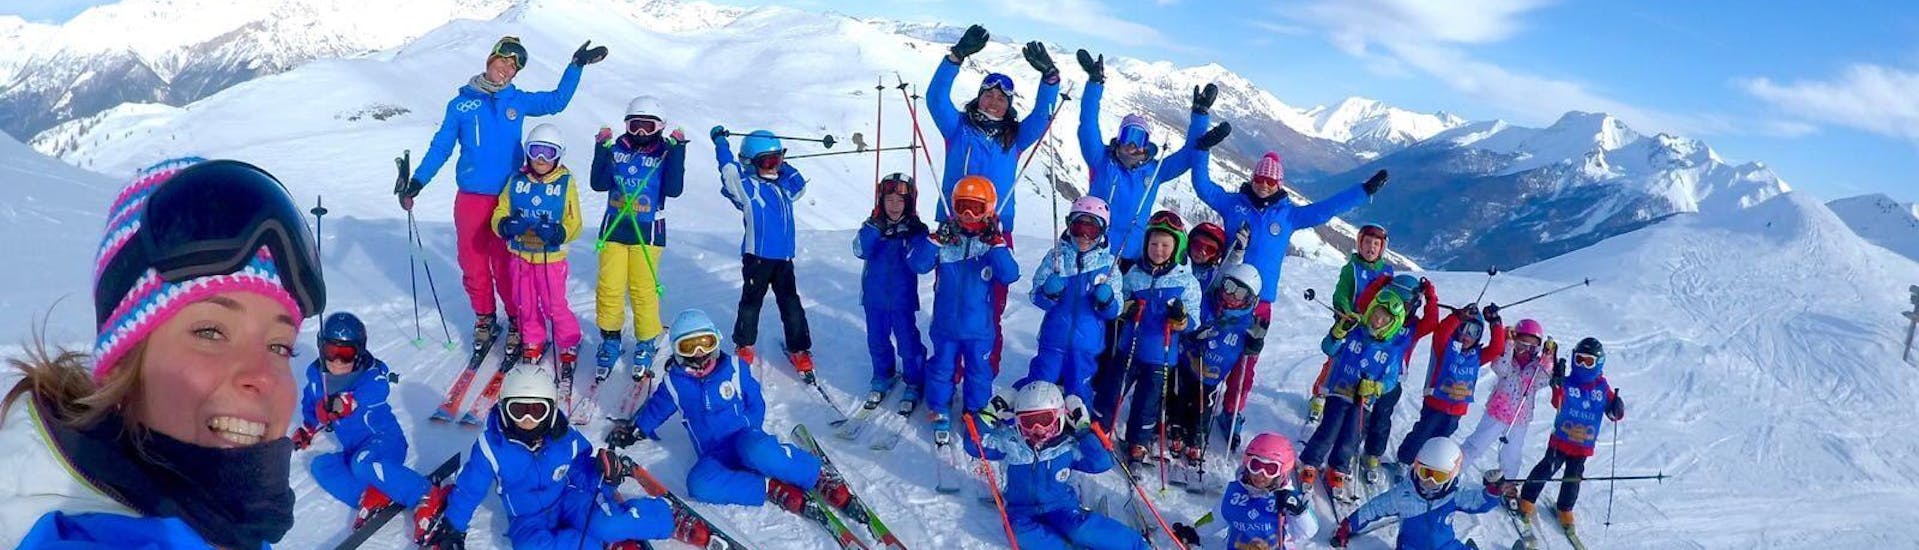 Un groupe d'enfants et leurs moniteurs de ski de l'école de ski Scuola di Sci Olimpionica posent pour une photo au sommet de la montagne à Sestrières, avant de commencer leurs Cours de ski Enfants (5-14 ans) pour Skieurs expérimentés.